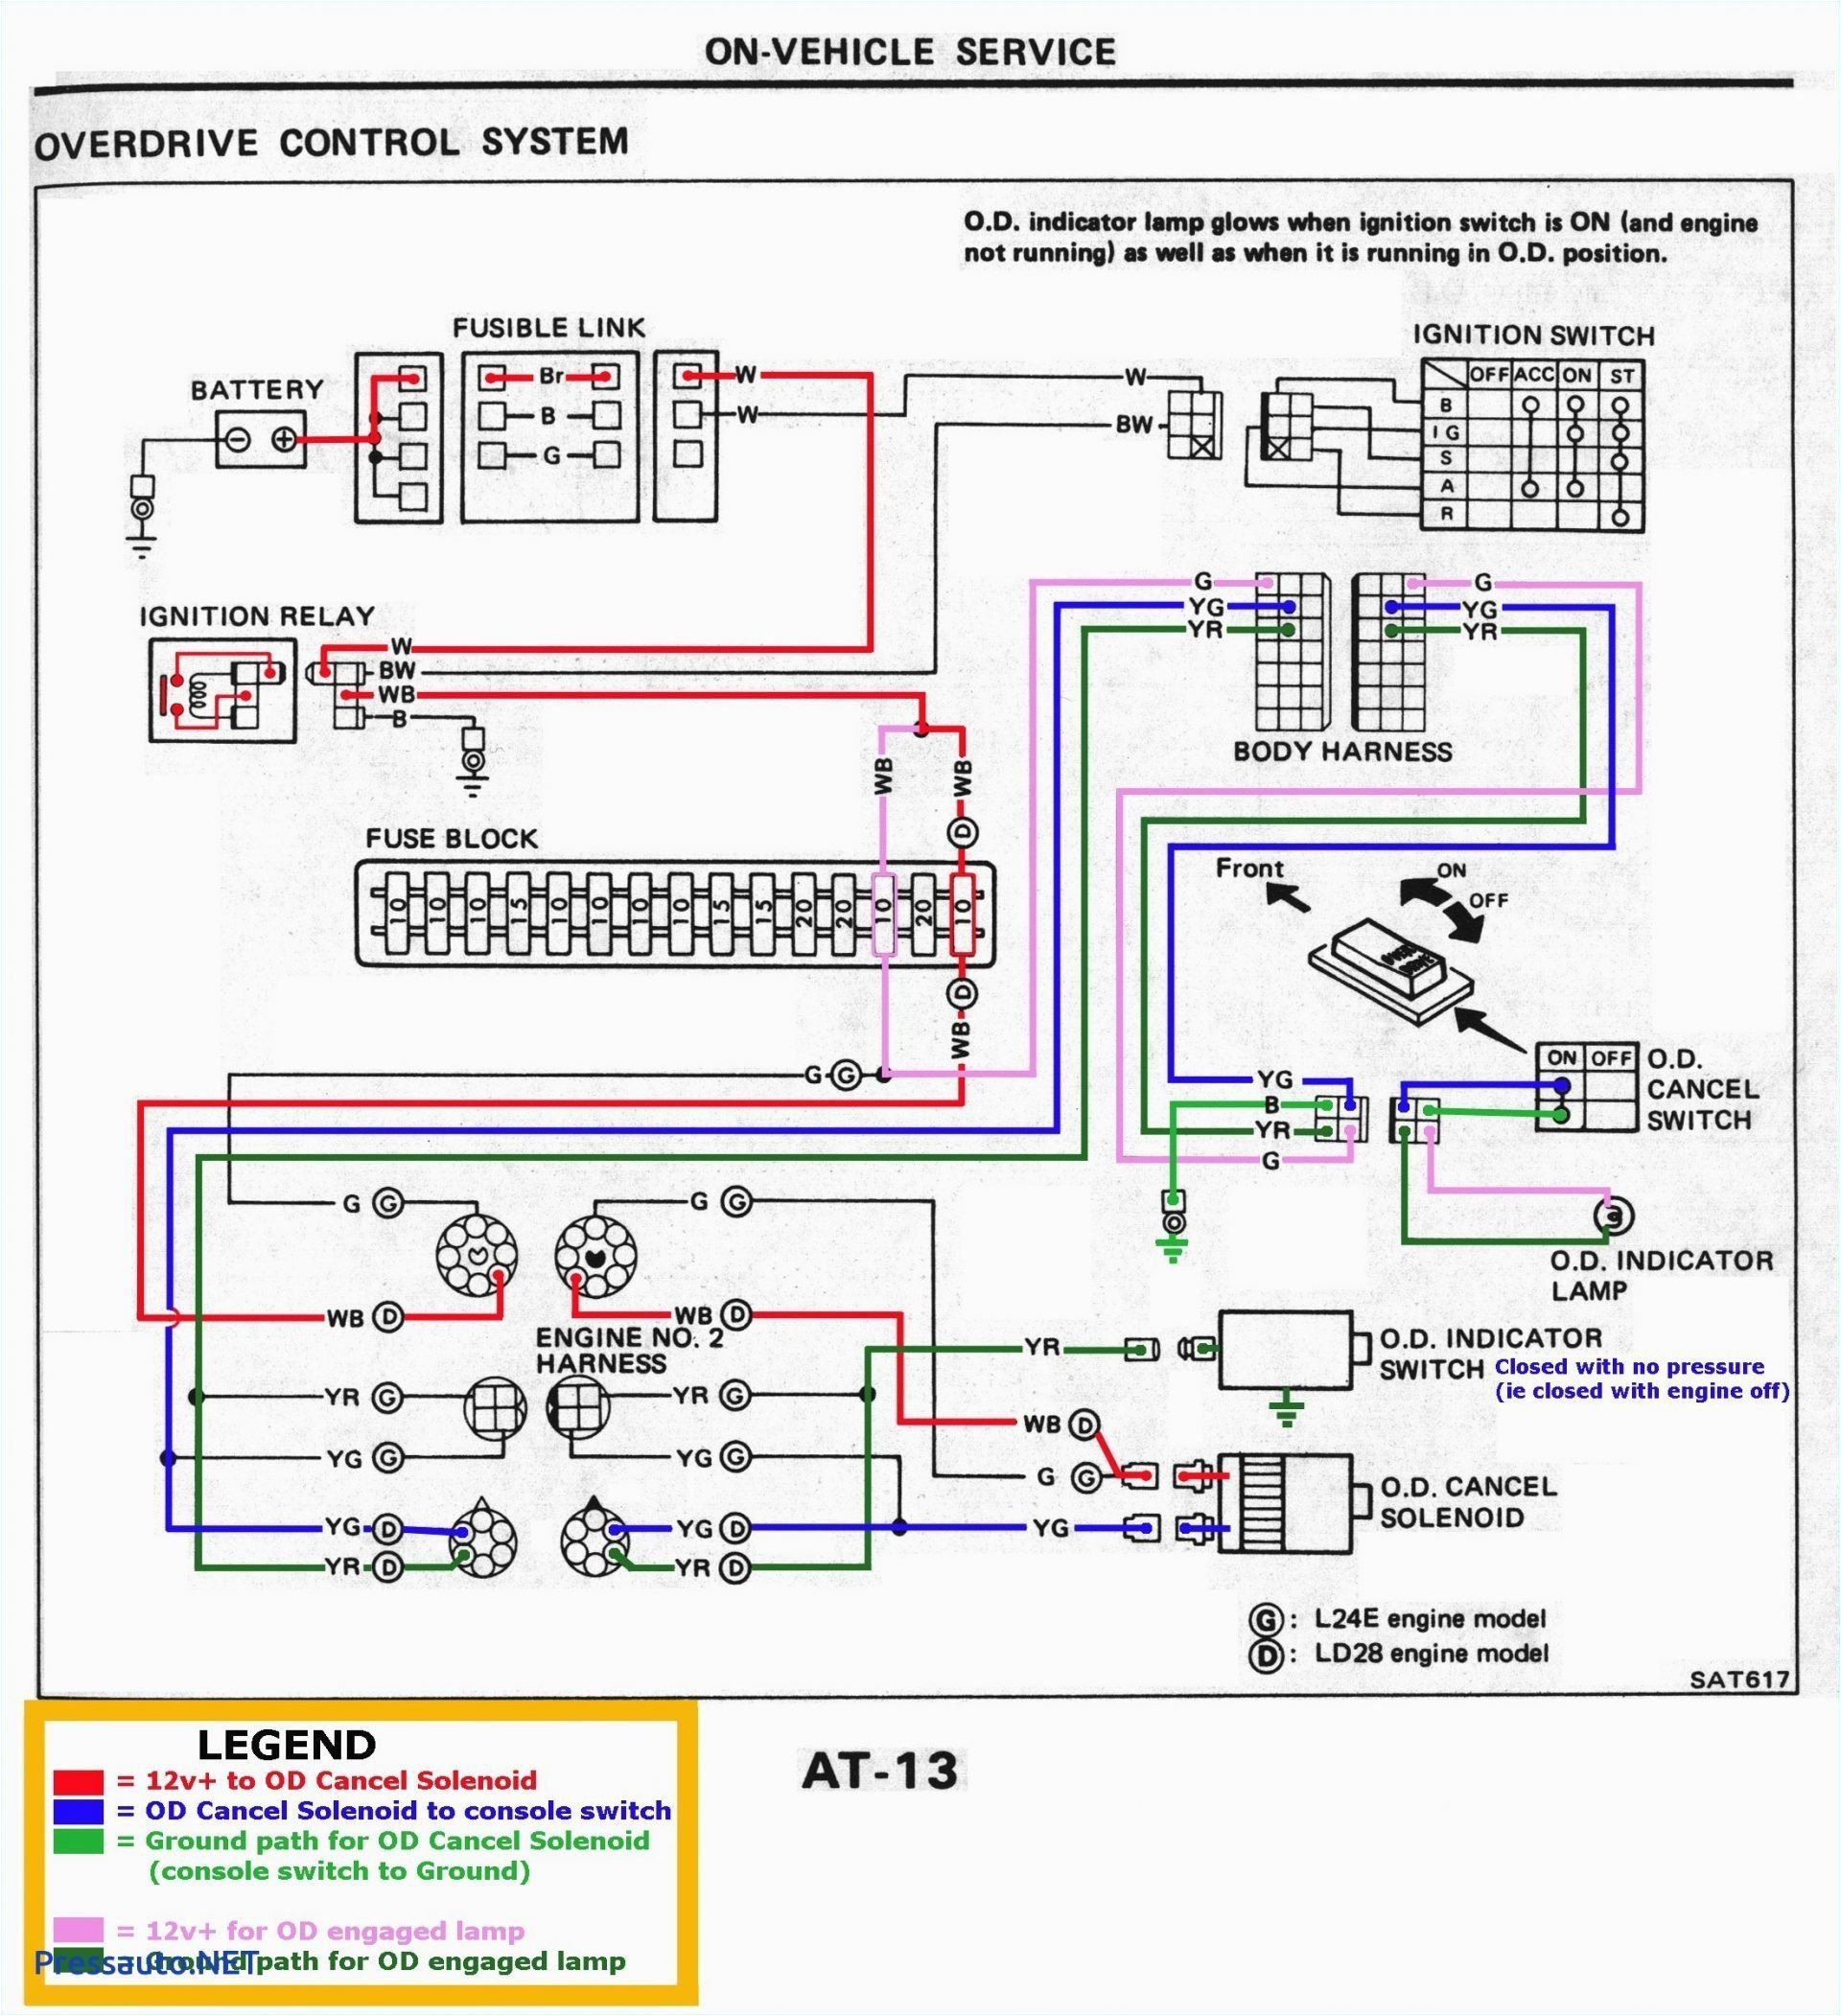 sds wiring diagram wiring diagram load sds em 4 wiring diagram sds wiring diagram